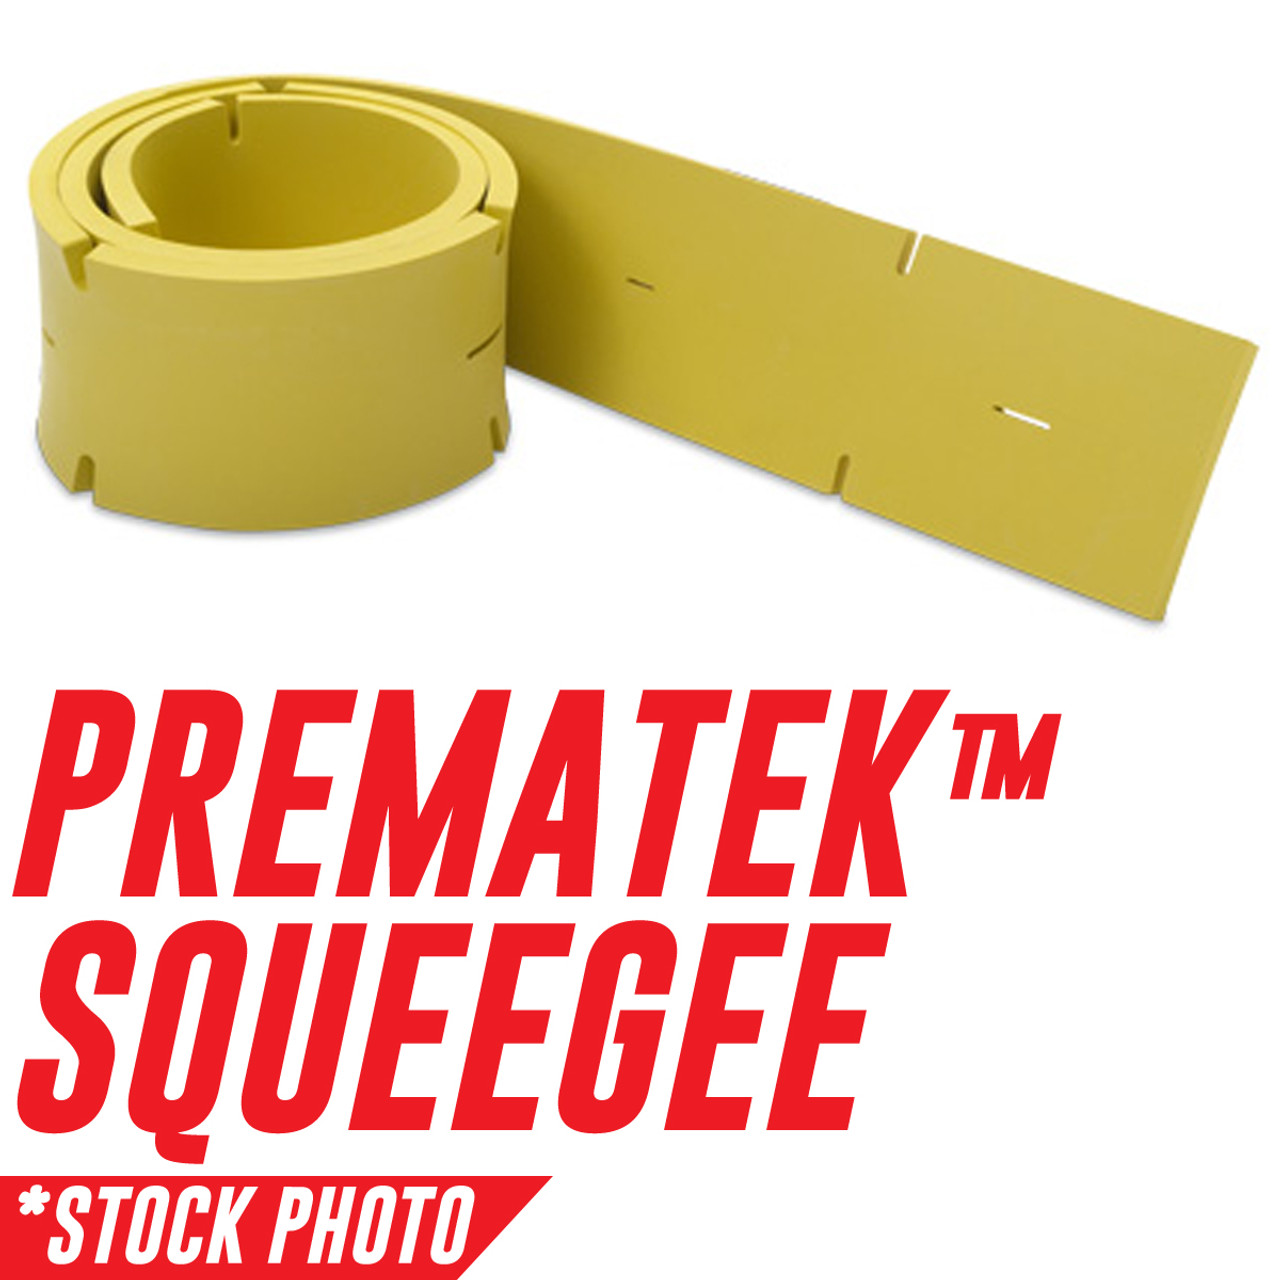 83810: Squeegee, Rear, Prematek fits Tennant Models 8410